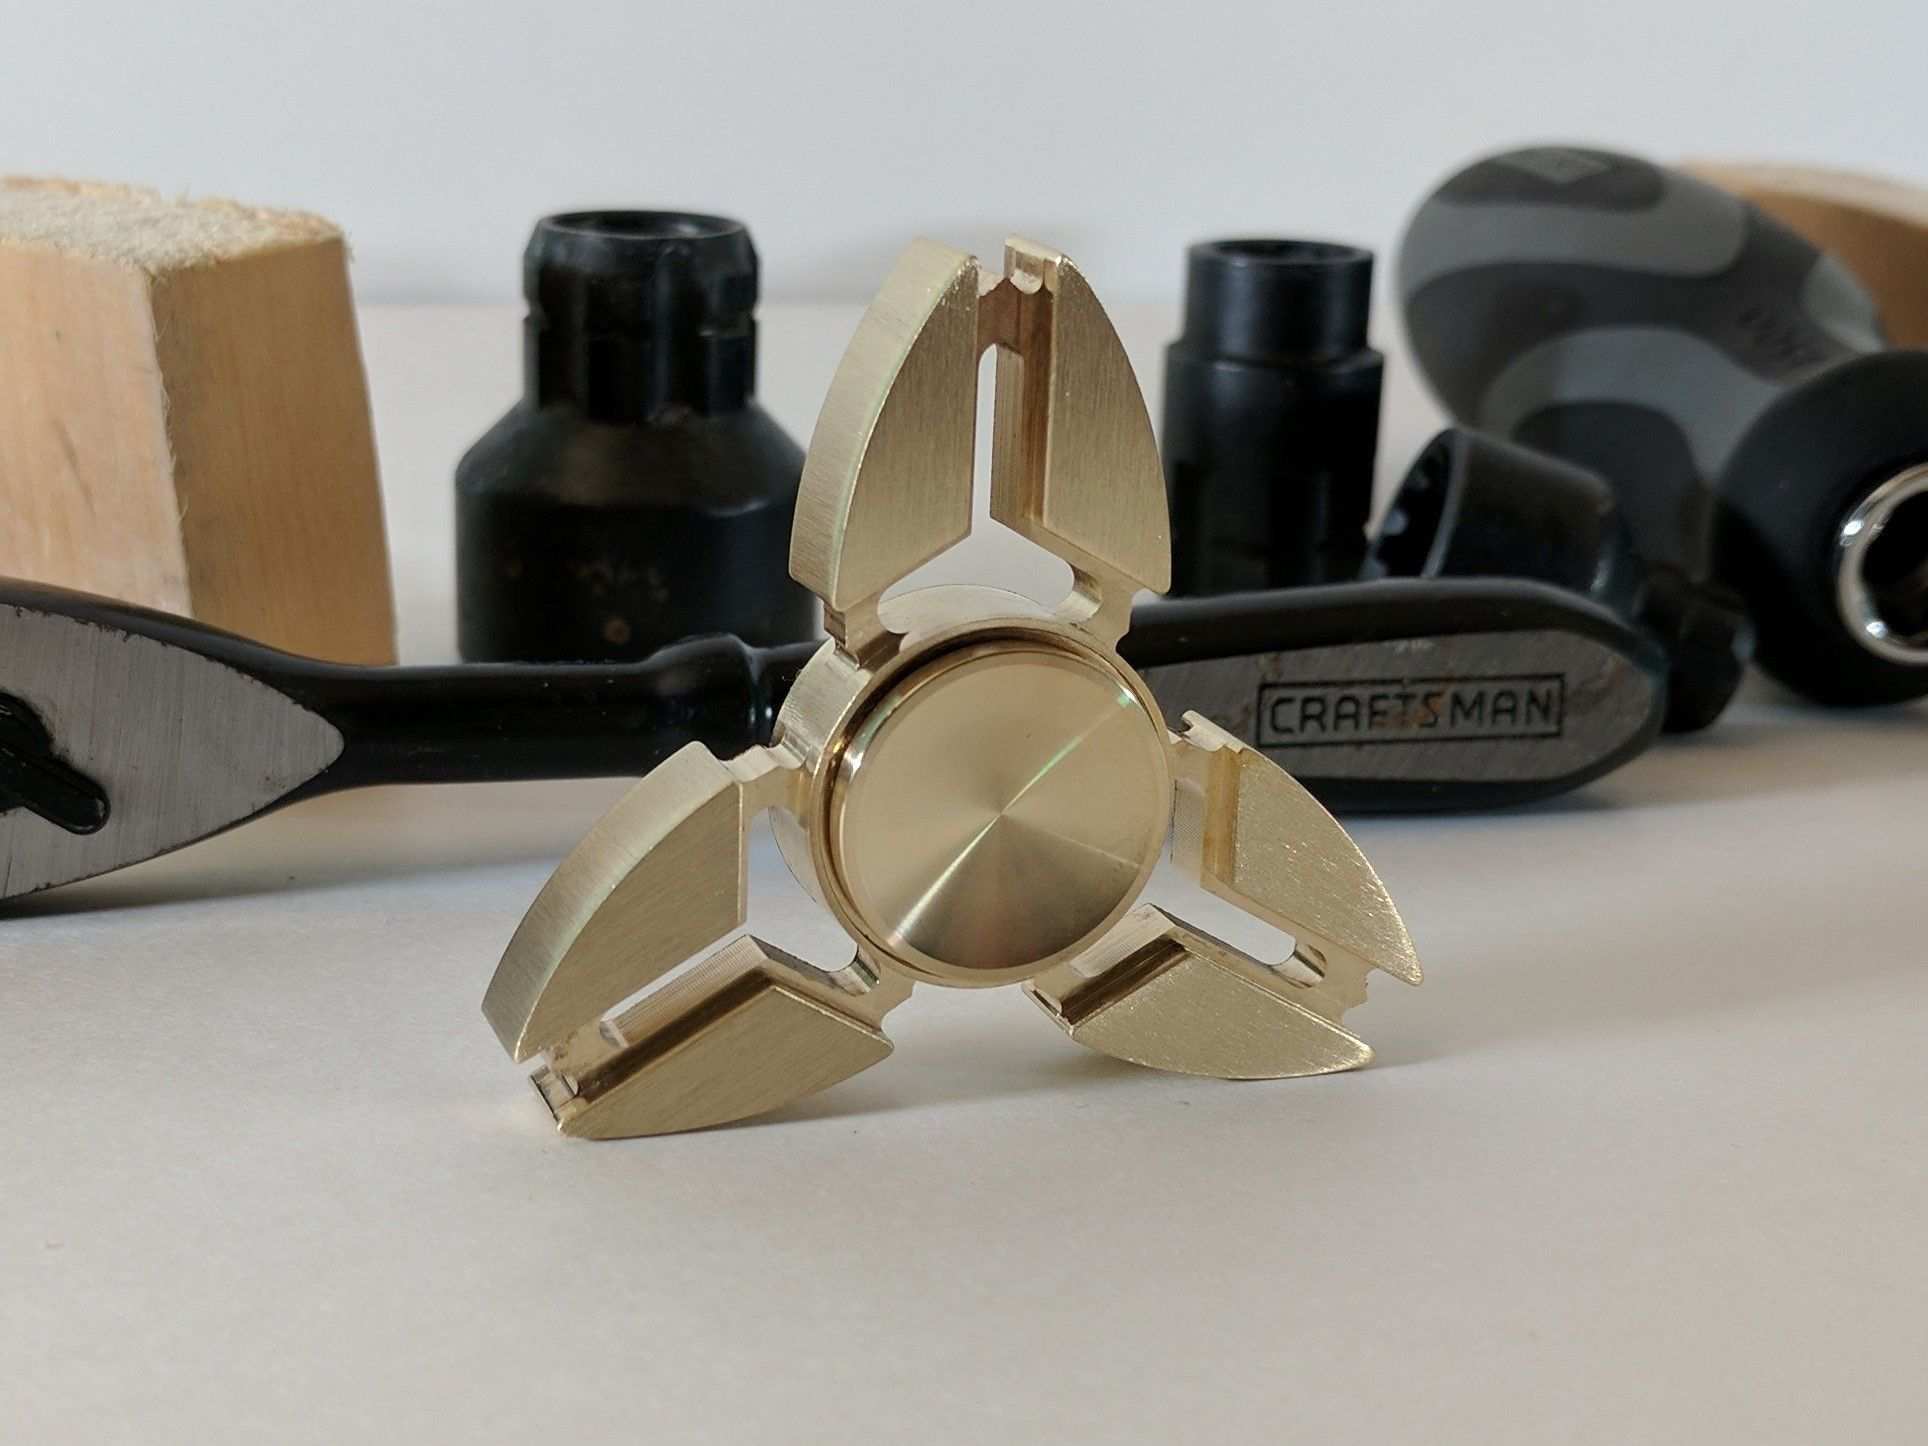 Triangular Tri Bar Brass Hand Spinner Fidget Toy With Brass End Caps Fidget Toys Spinners Hand Spinner